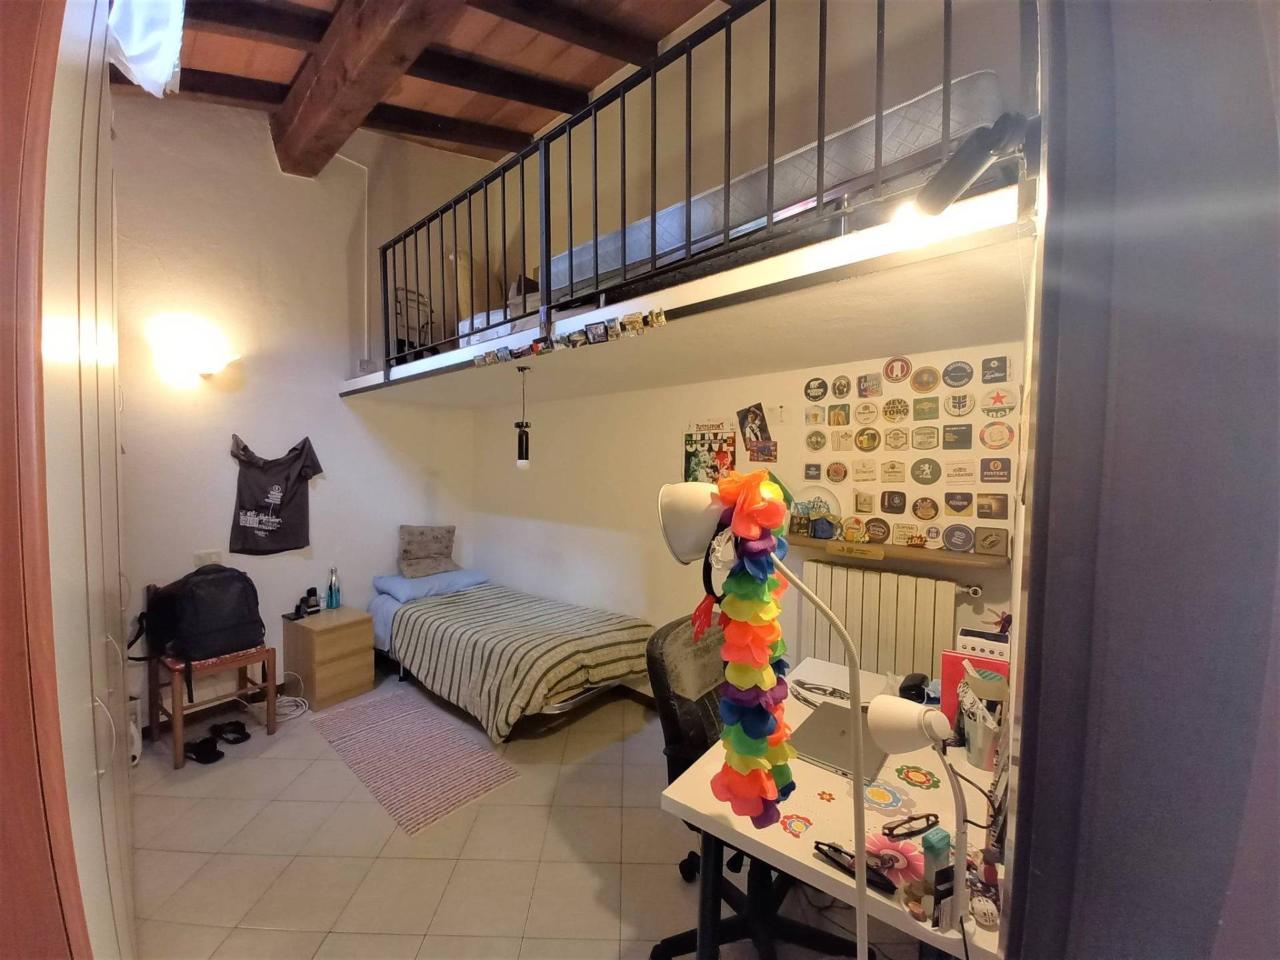 Stanza/Camera in affitto a Parma